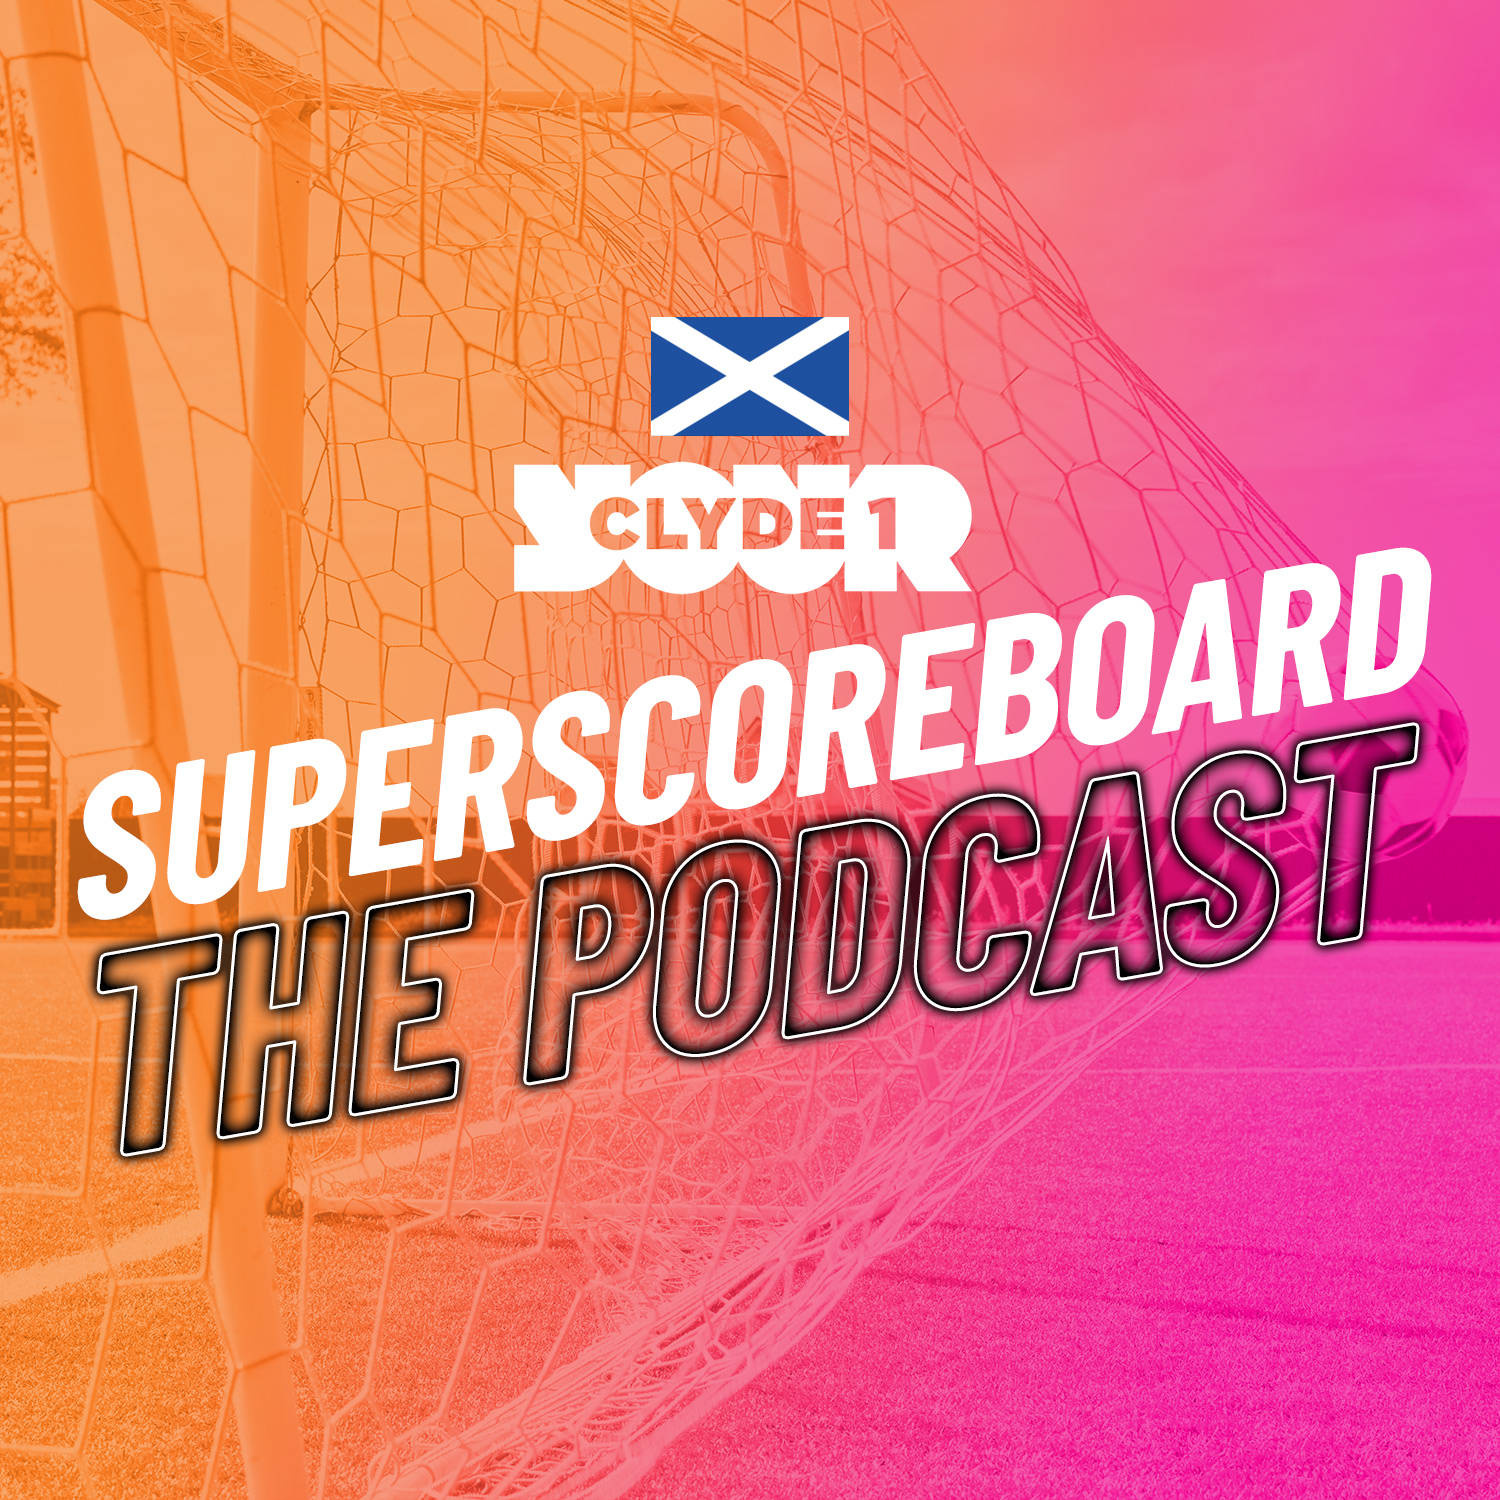 Tuesday 5th November Clyde 1 Superscoreboard